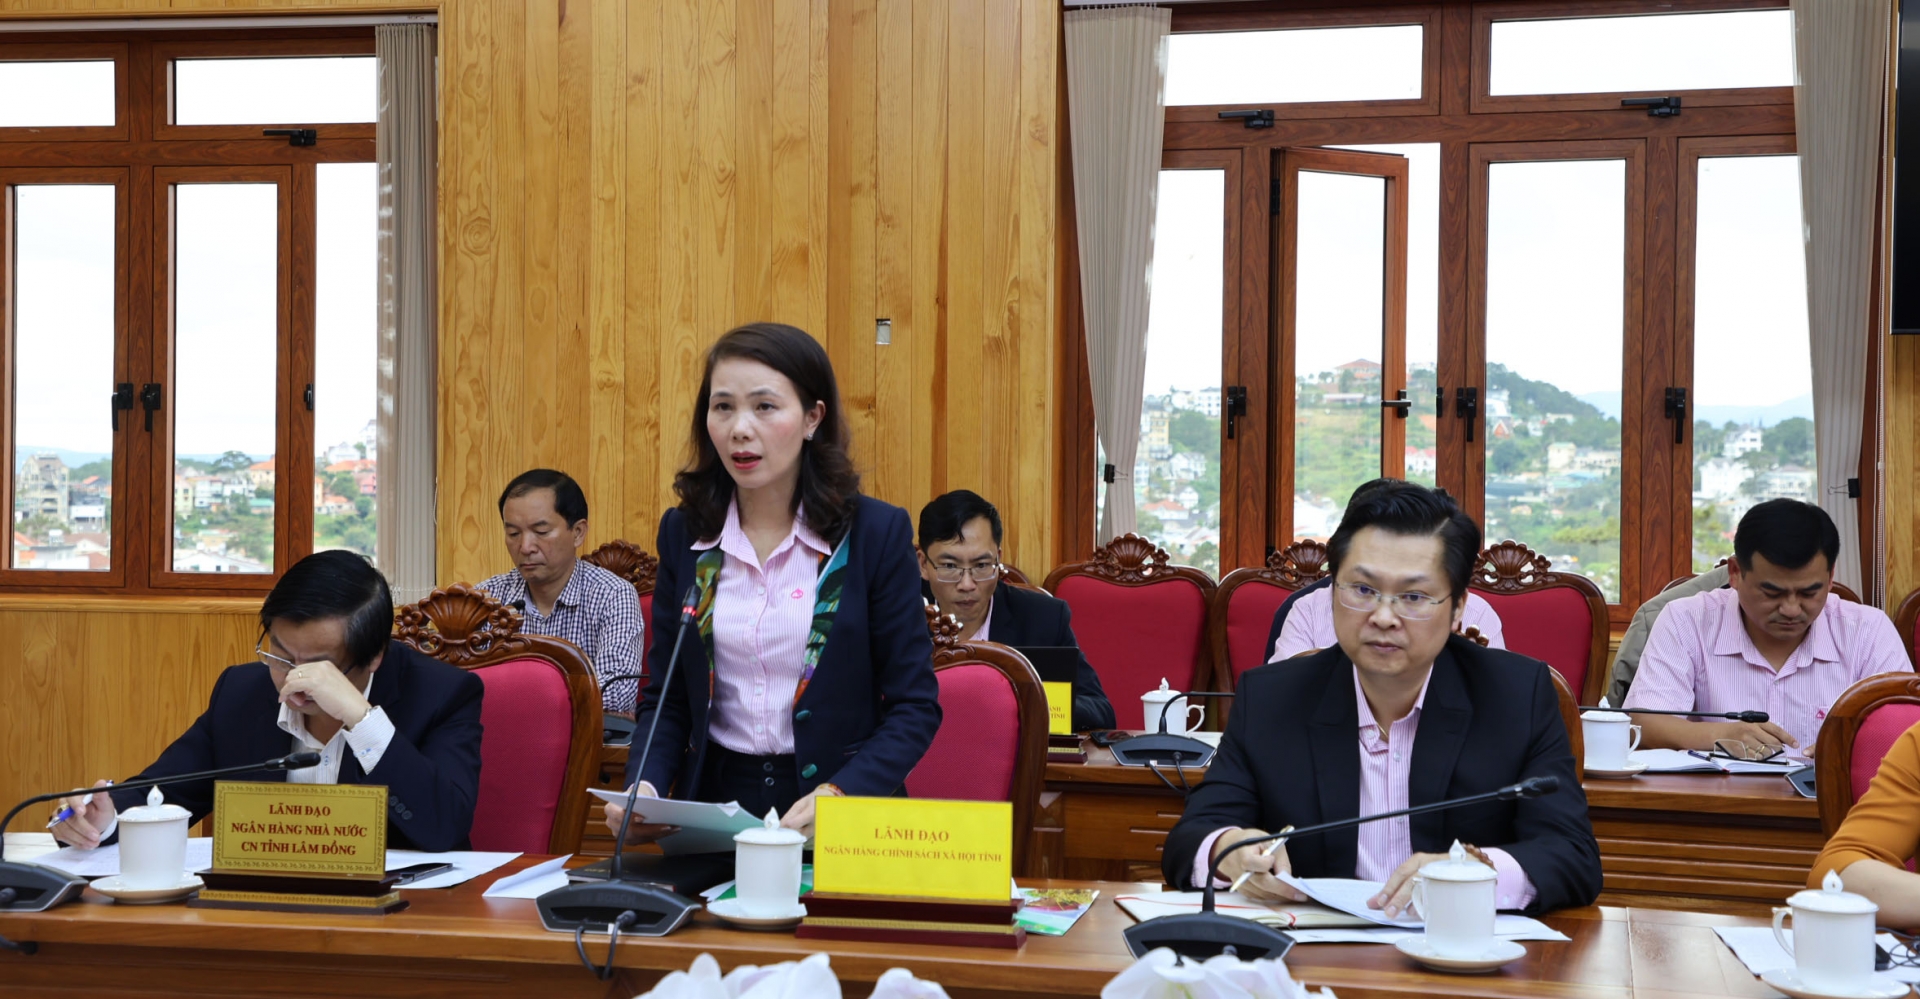 Bà Nguyễn Thị Ngọc Thu – Phó Giám đốc phụ trách NHCSXH chi nhánh tỉnh Lâm Đồng trình bày báo cáo hoạt động của Ban đại diện